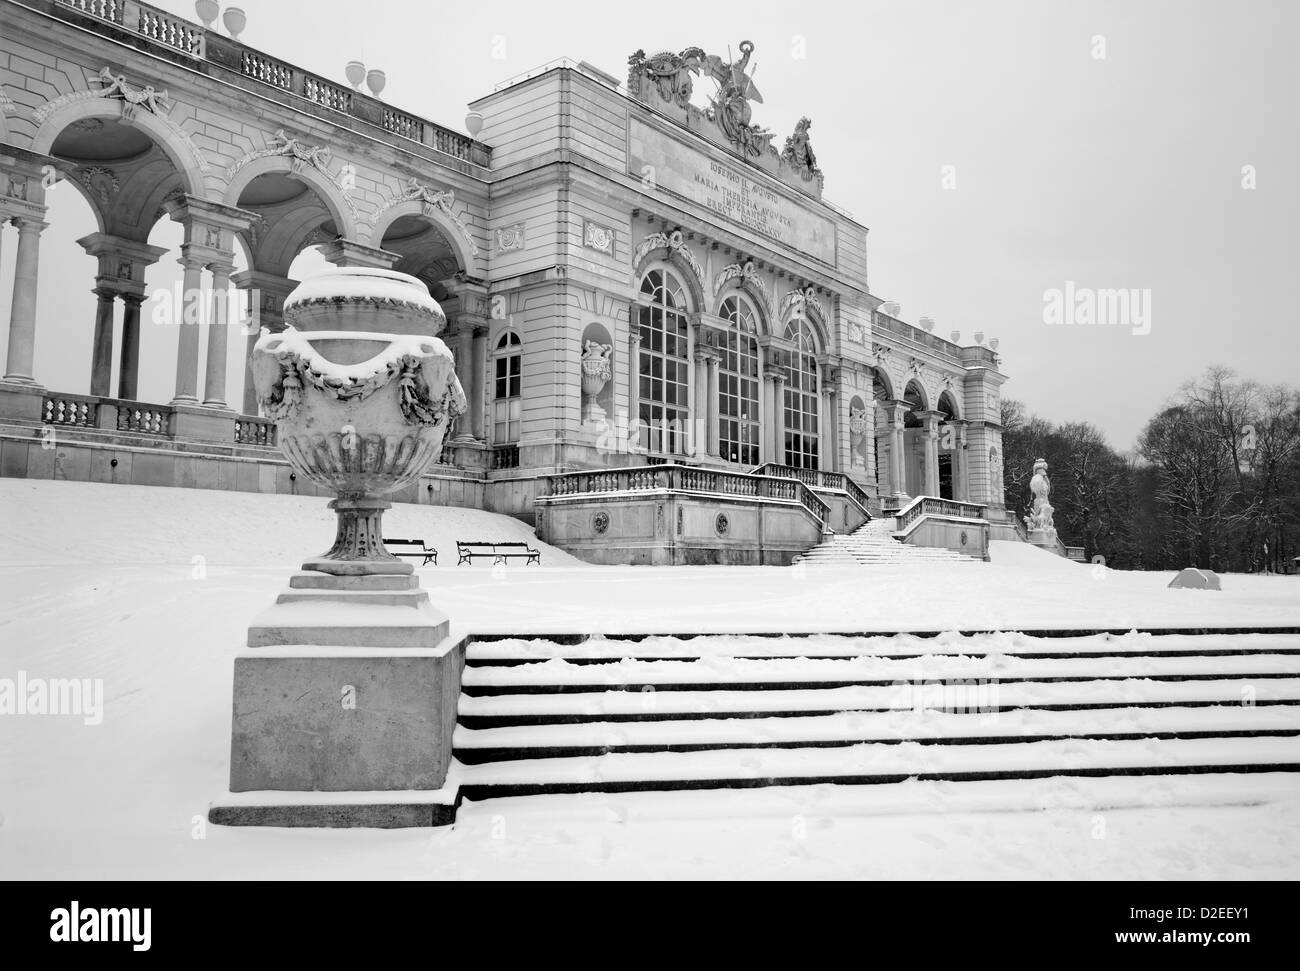 Viena - Gloriette del palacio Schonbrunn en invierno Foto de stock